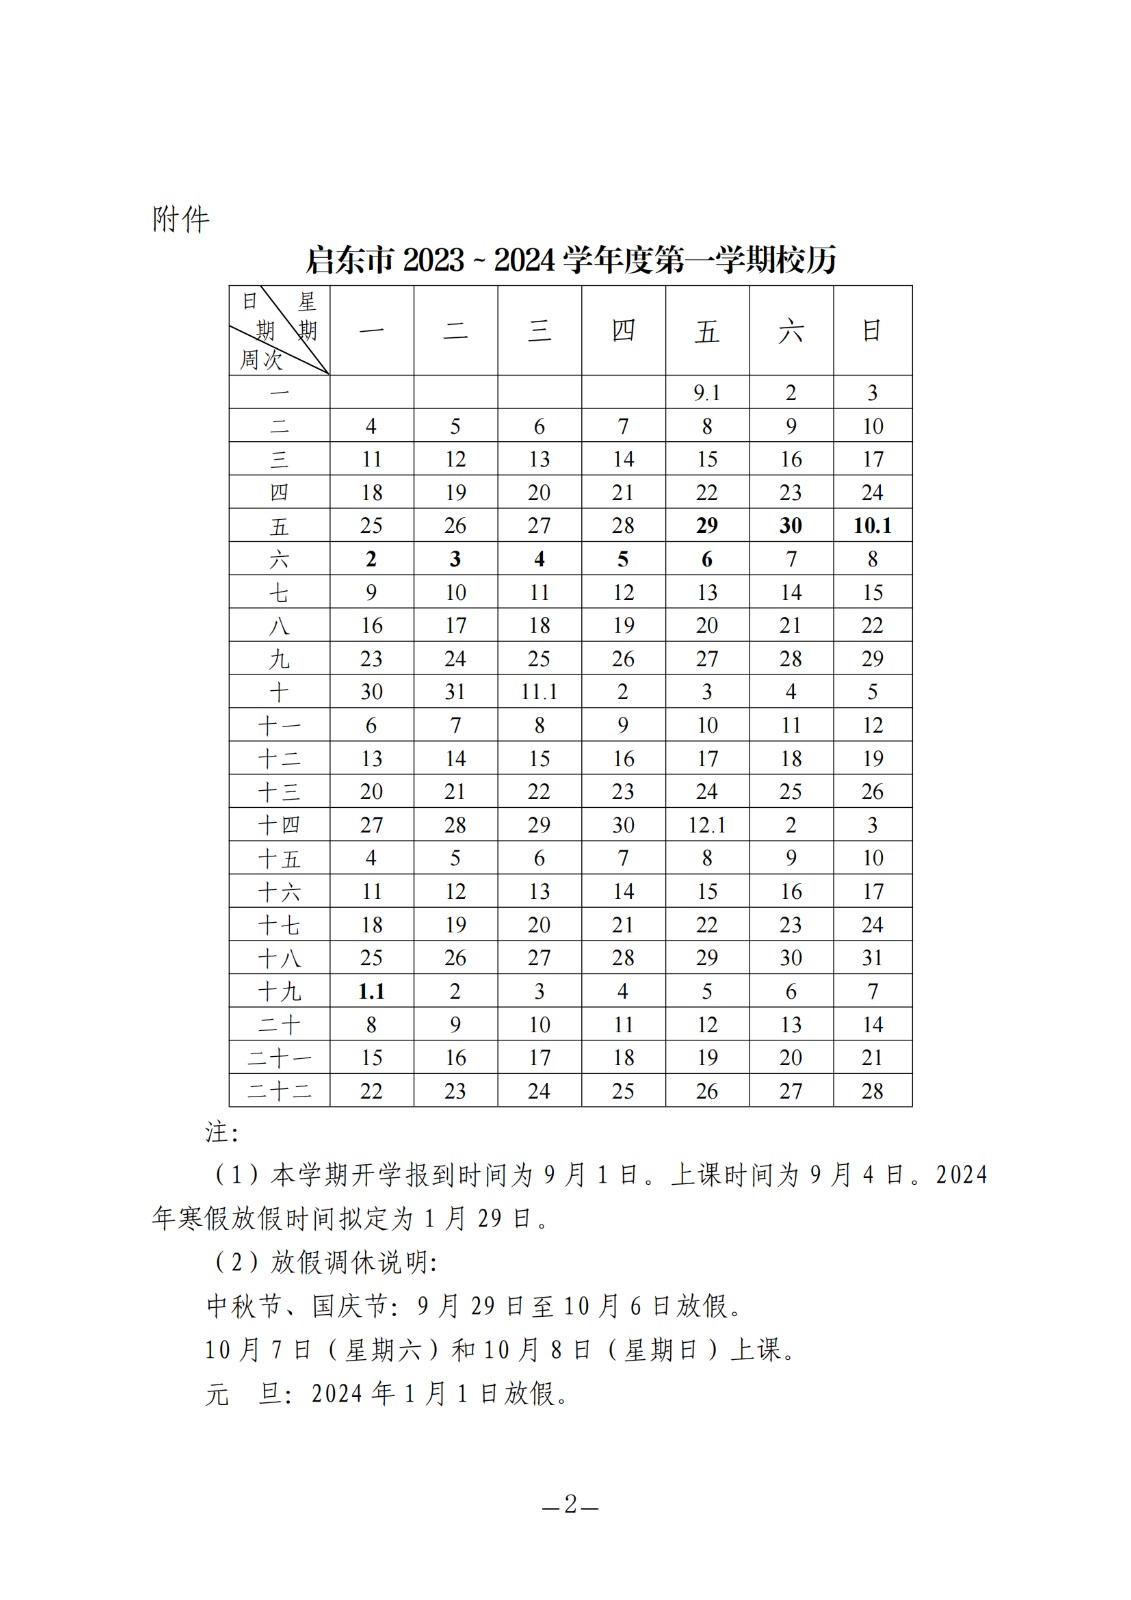 启东市2023-2024学年度第一学期校历.jpg